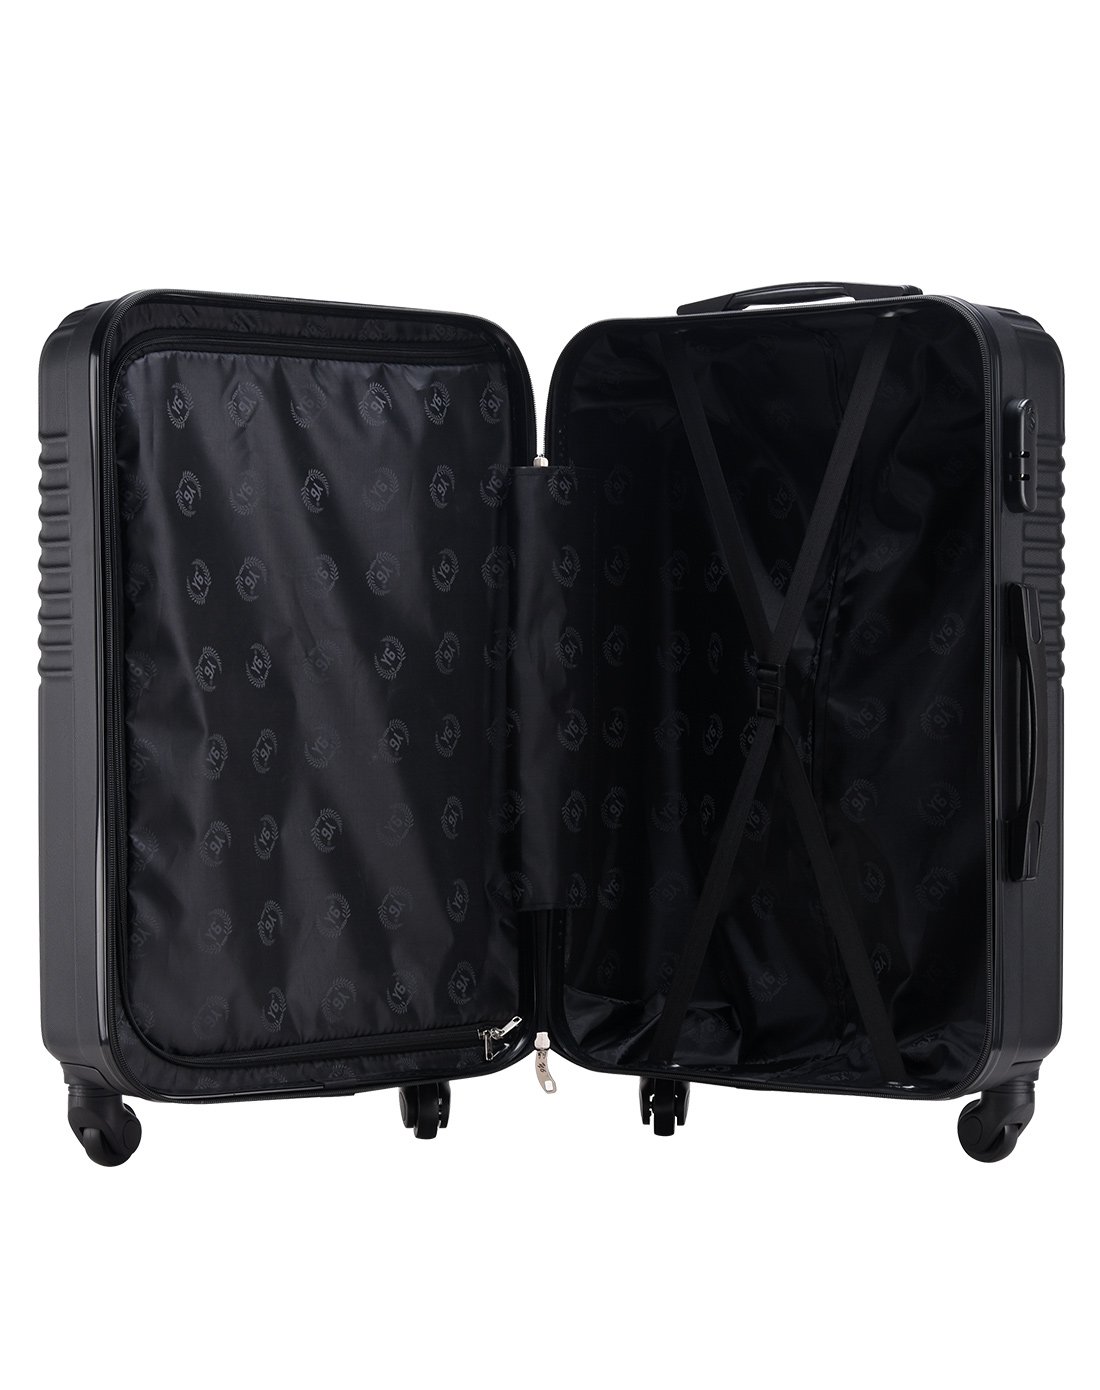 新品防刮斜纹abs款行李箱拉杆箱20寸黑色